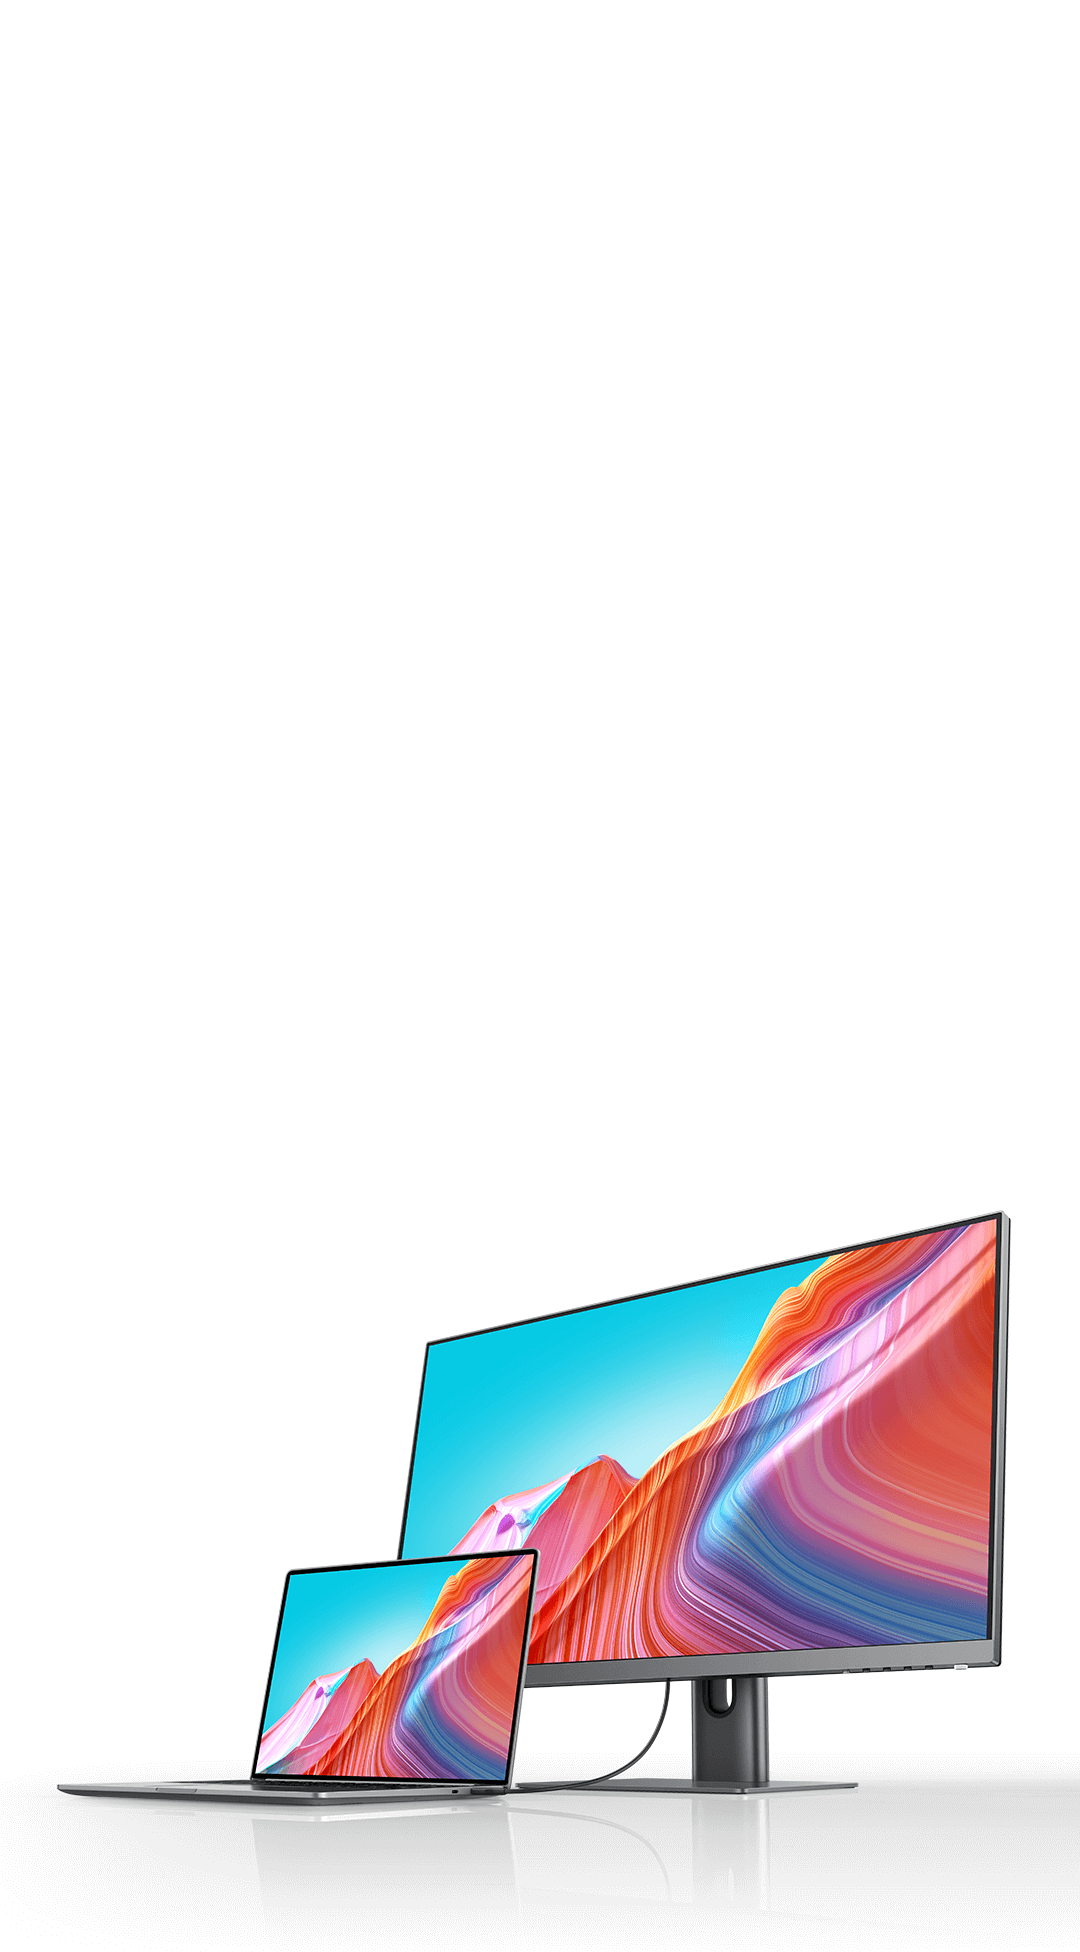 Xiaomi presenta su primer monitor 4K: 27 pulgadas, certificado